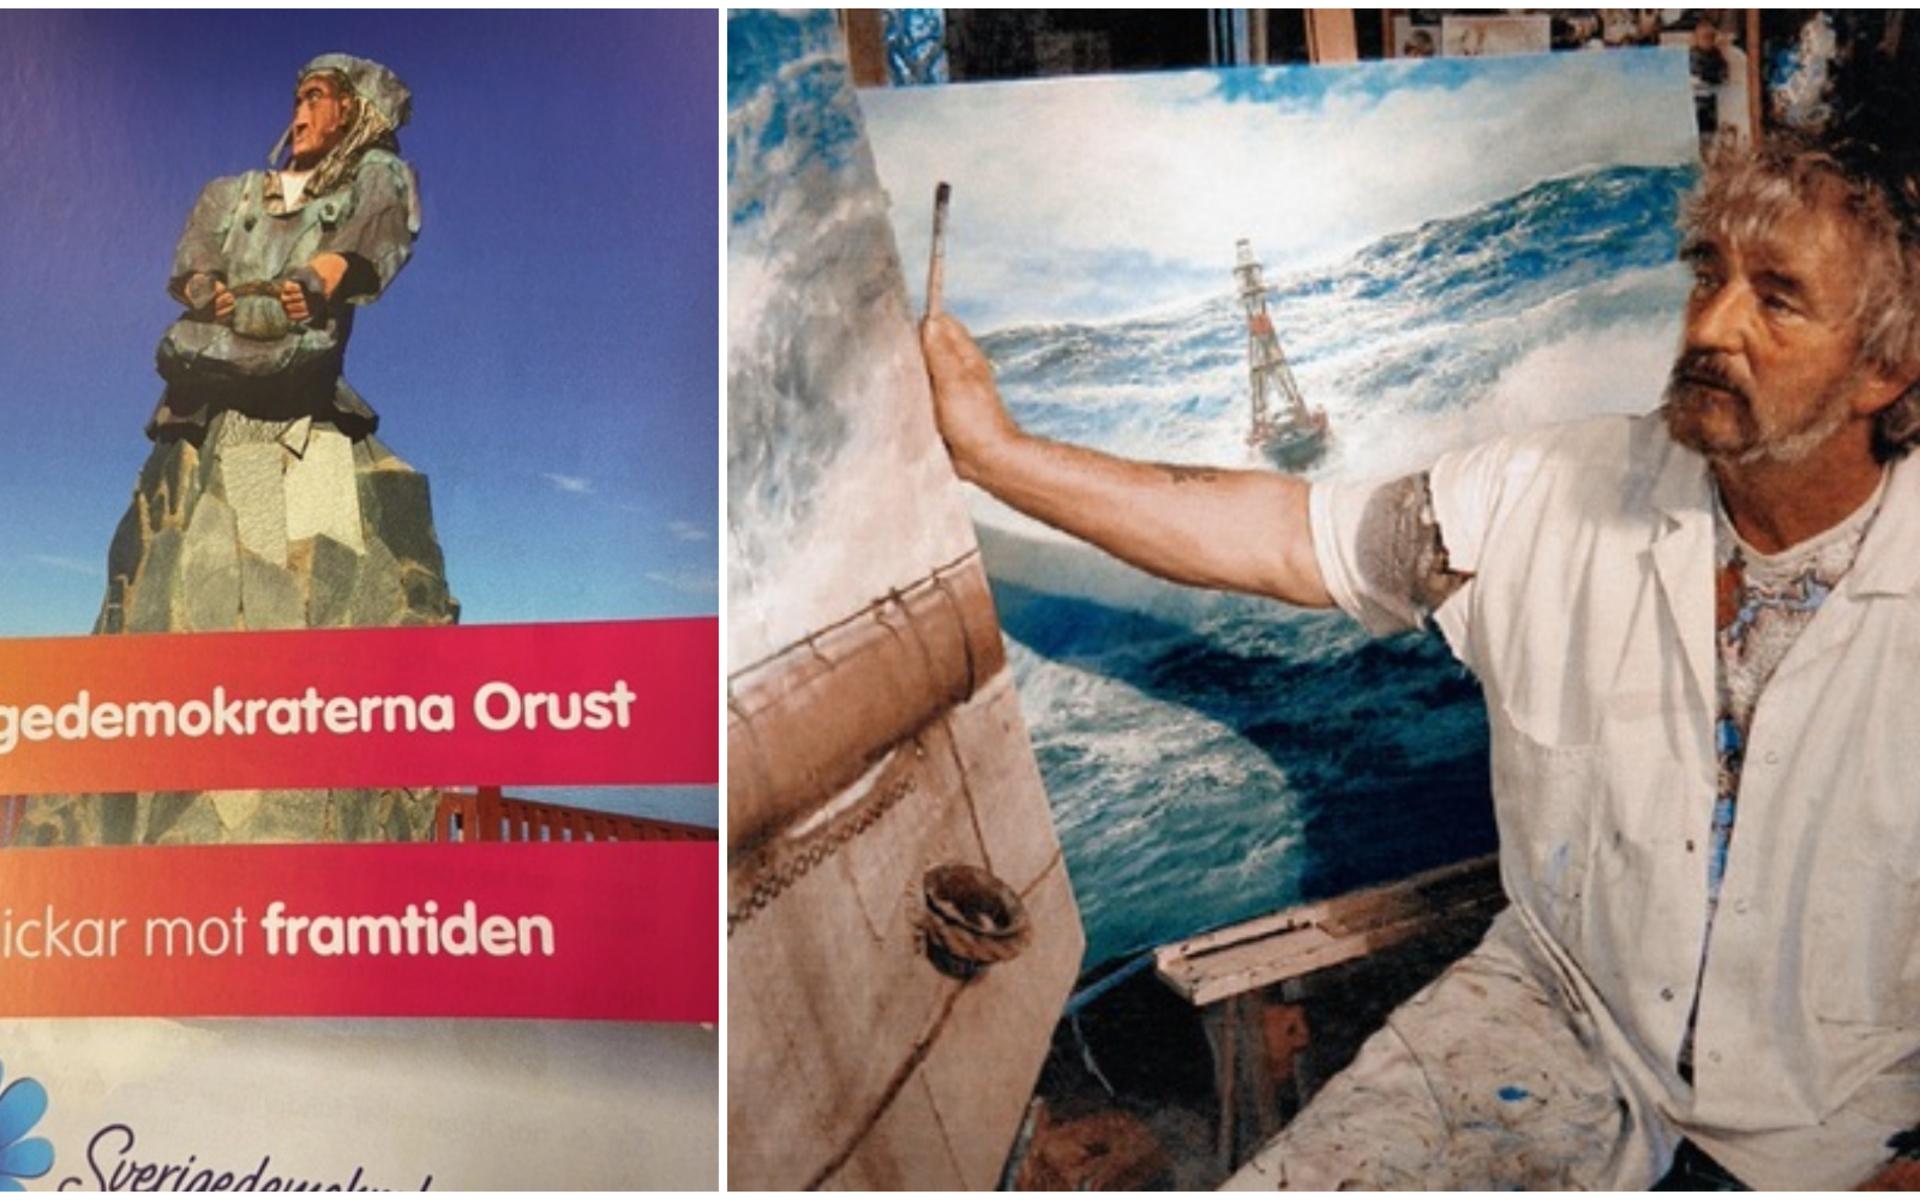 SD på Orust har valt att använda en bild på Hulda, statyn på Käringön. detta upprör konstnären Franz Glatzl som inte givit tillåtelse att statyn publiceras i politiska sammanhang. 